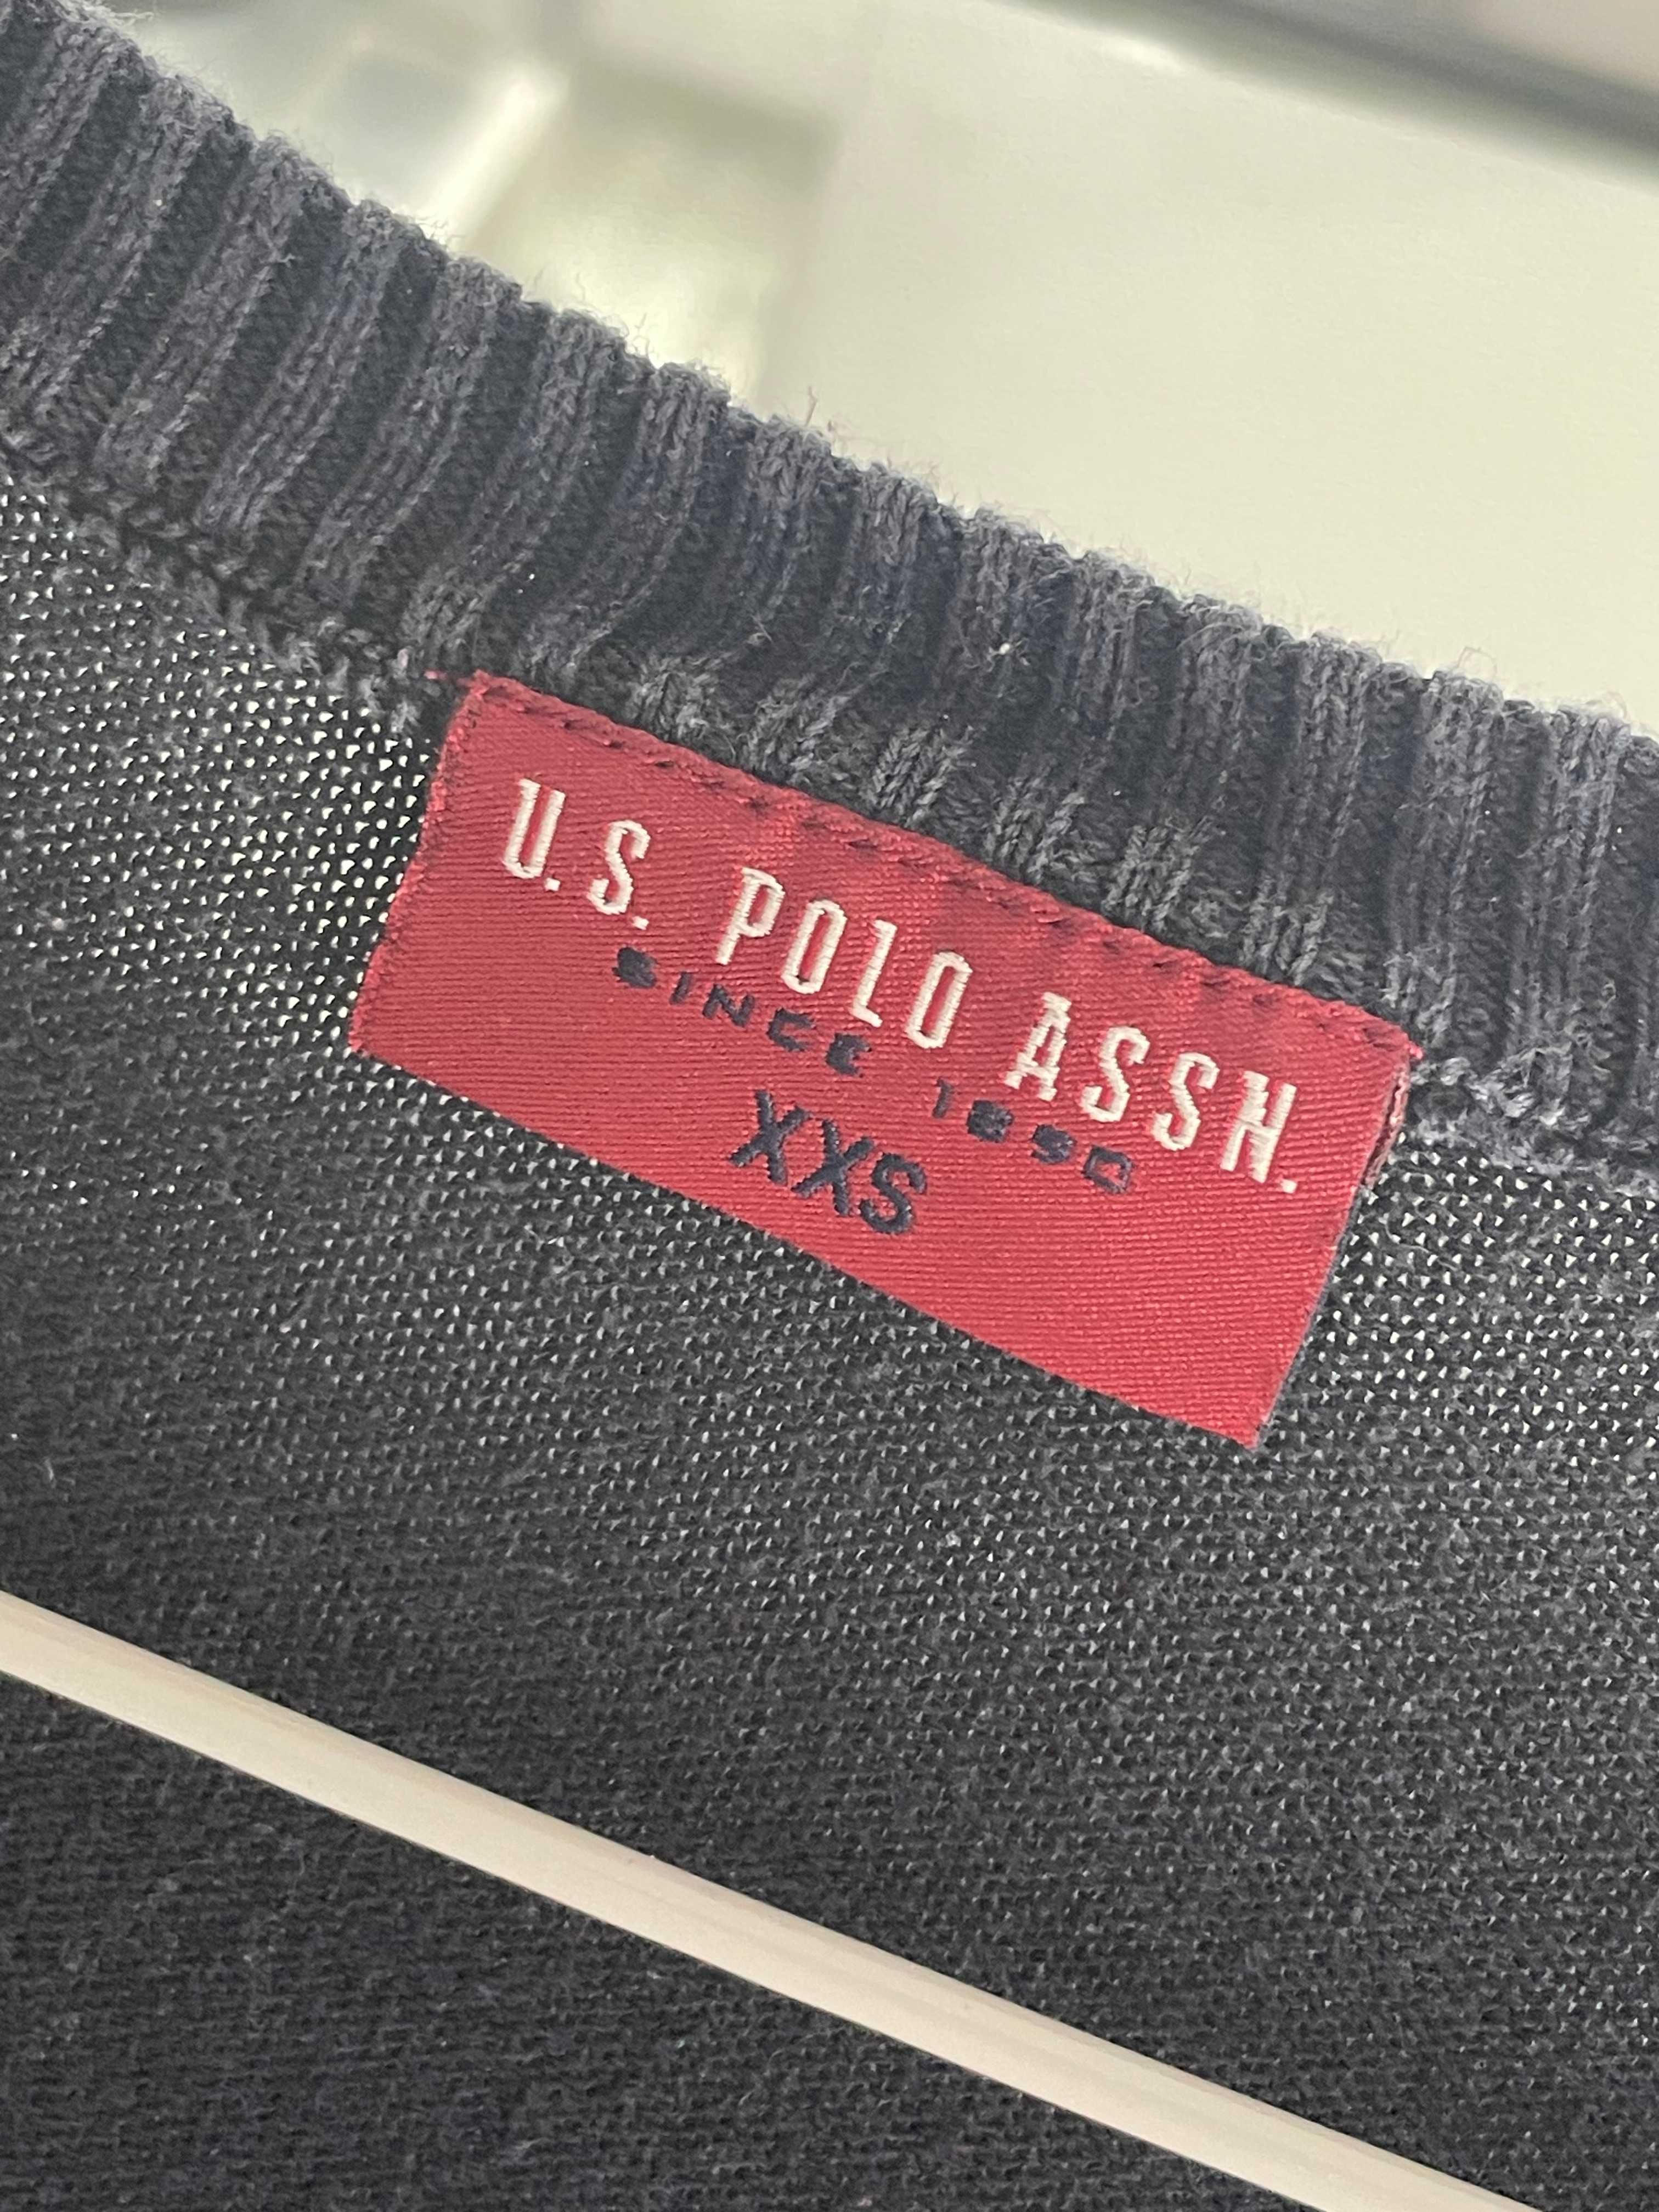 Pulover- U.S. Polo Assn, XXS